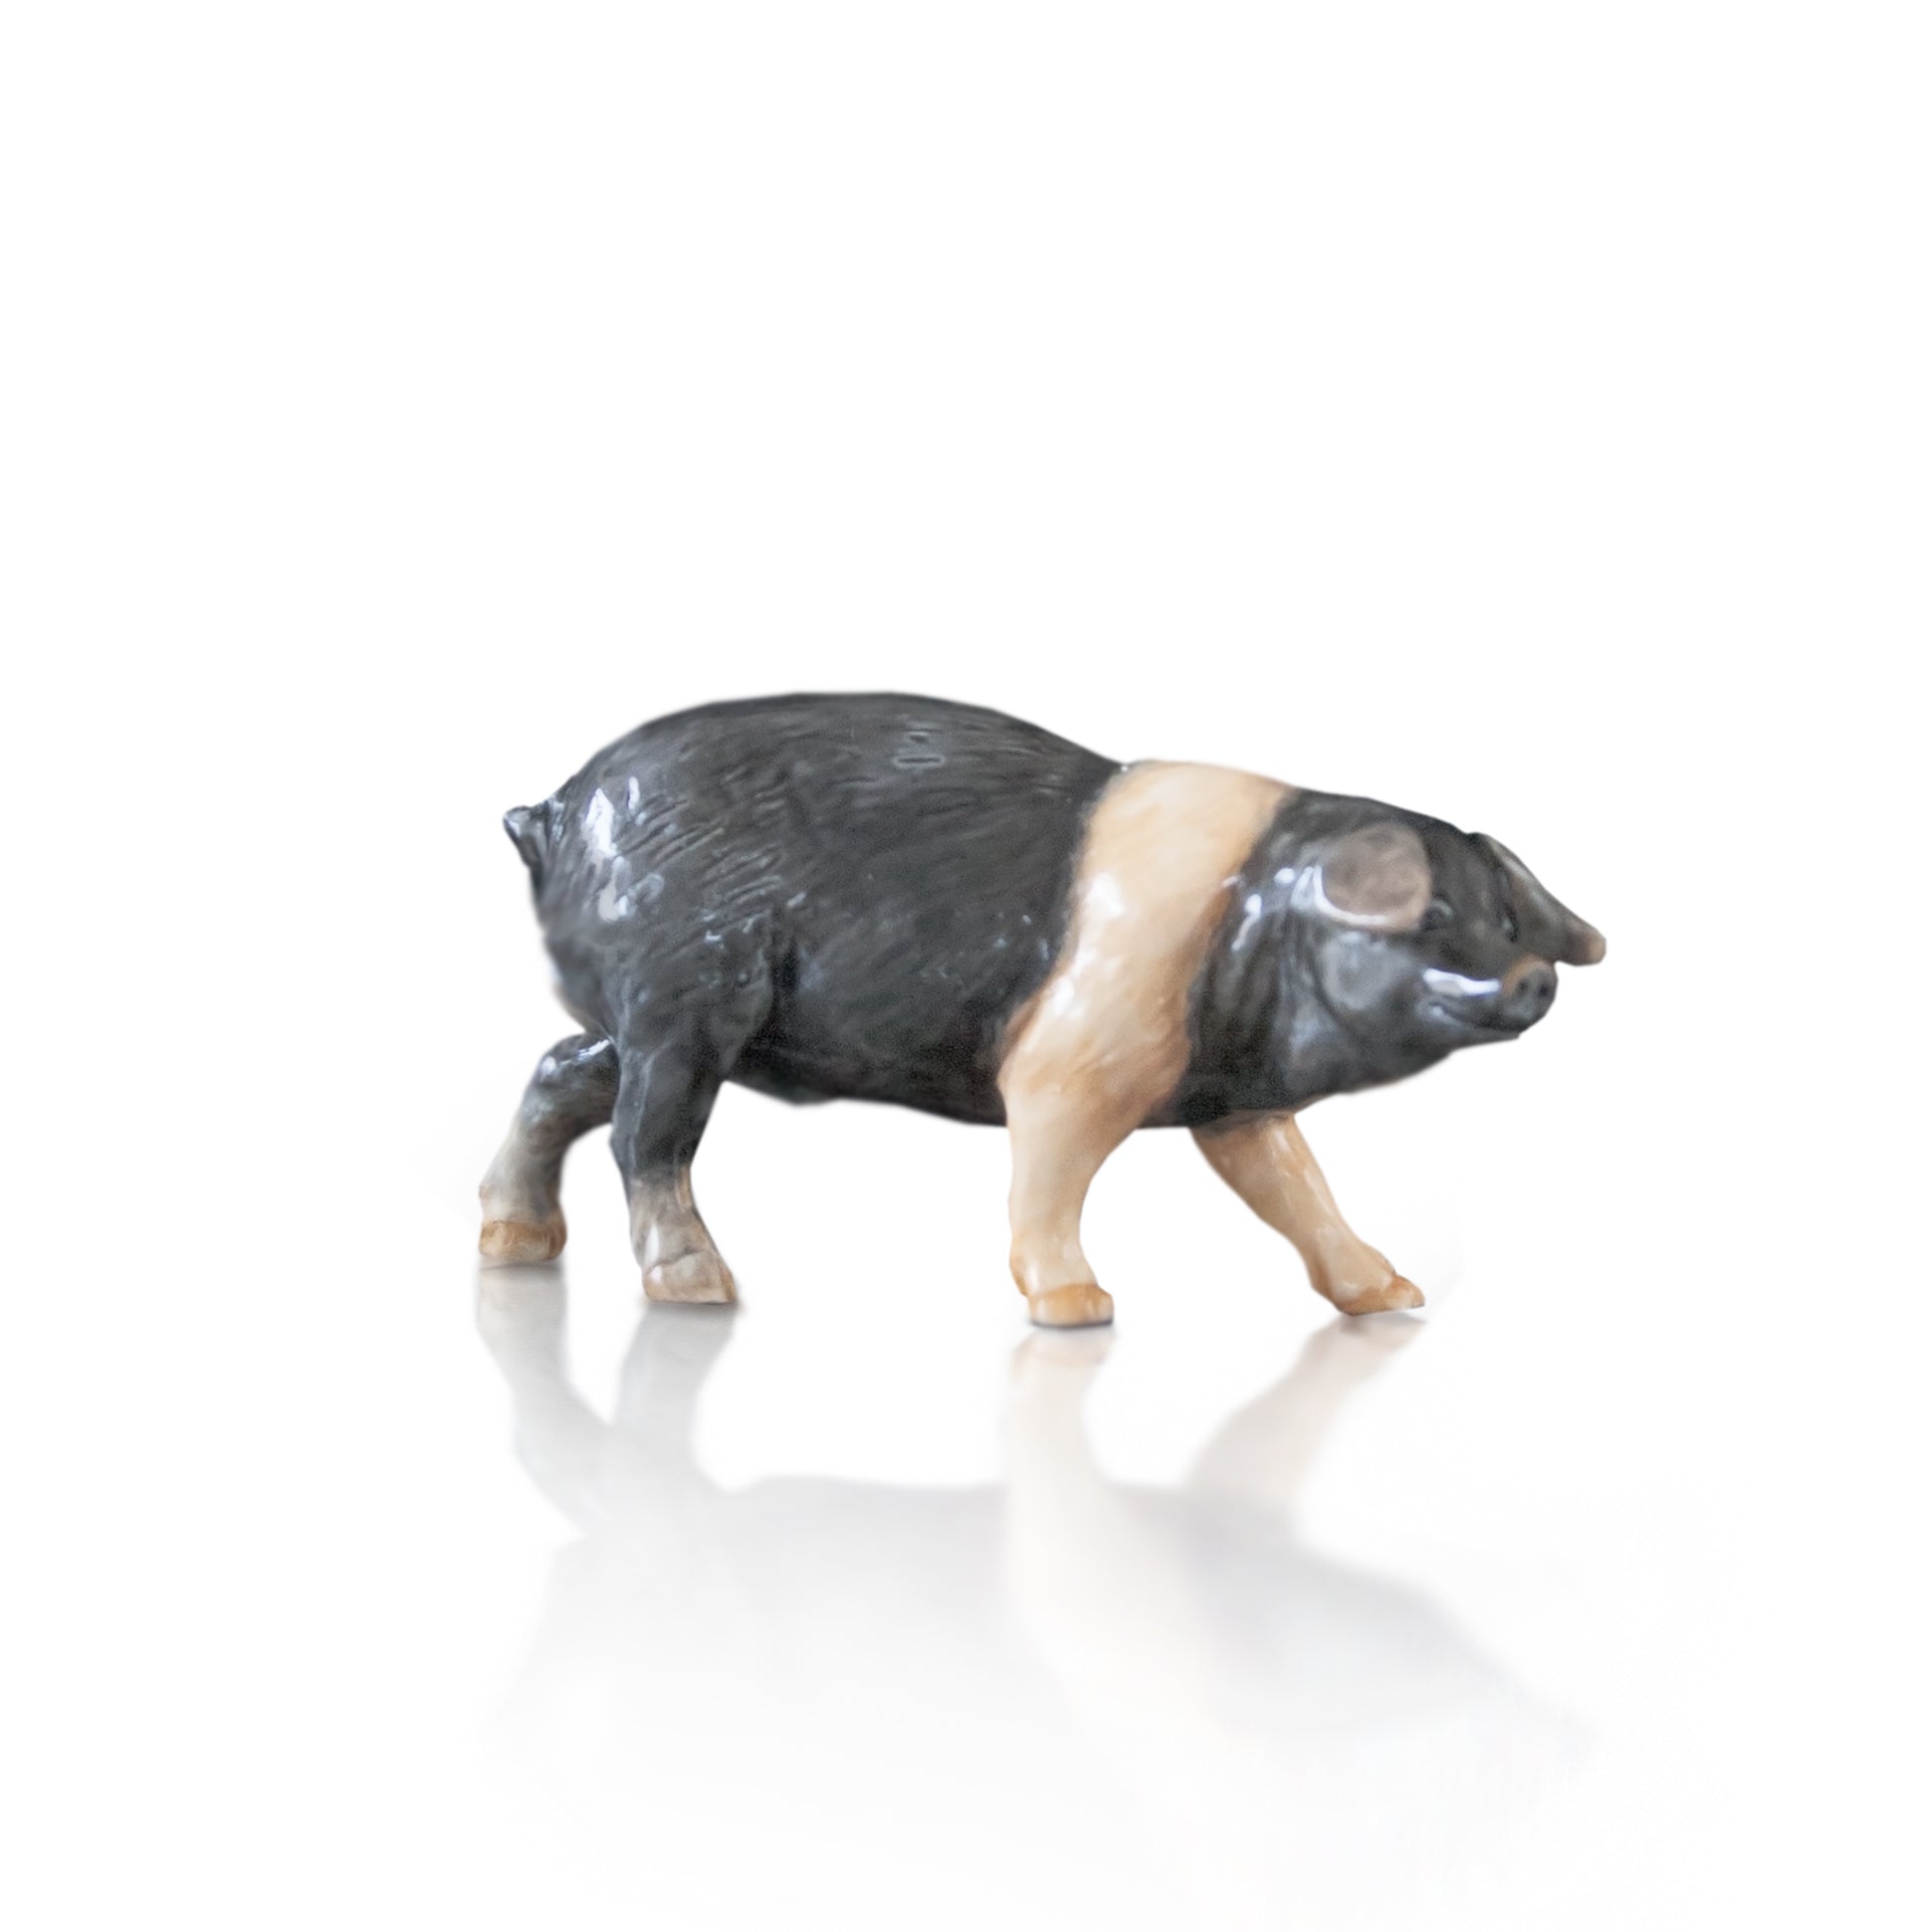 hand painted bone china saddleback pig gift figurine